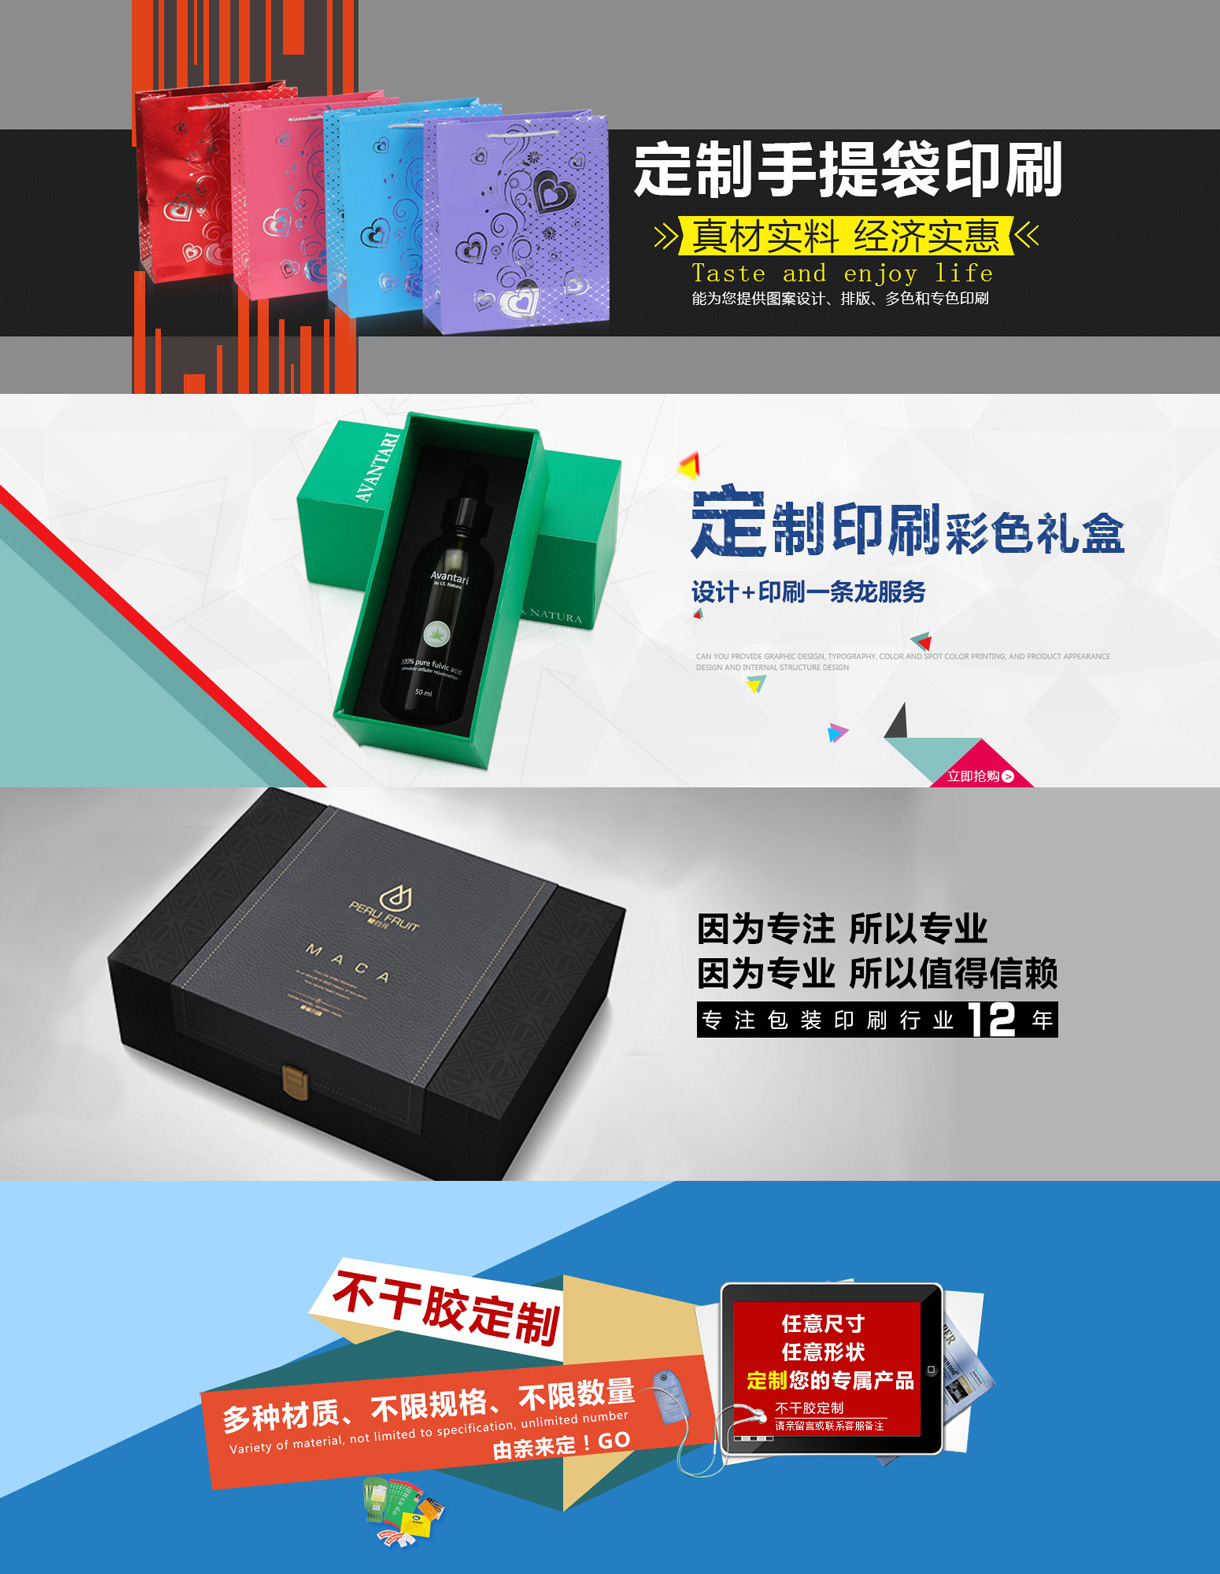 上海中谷包装制品有限公司-中国国际包装展-中国包装容器展